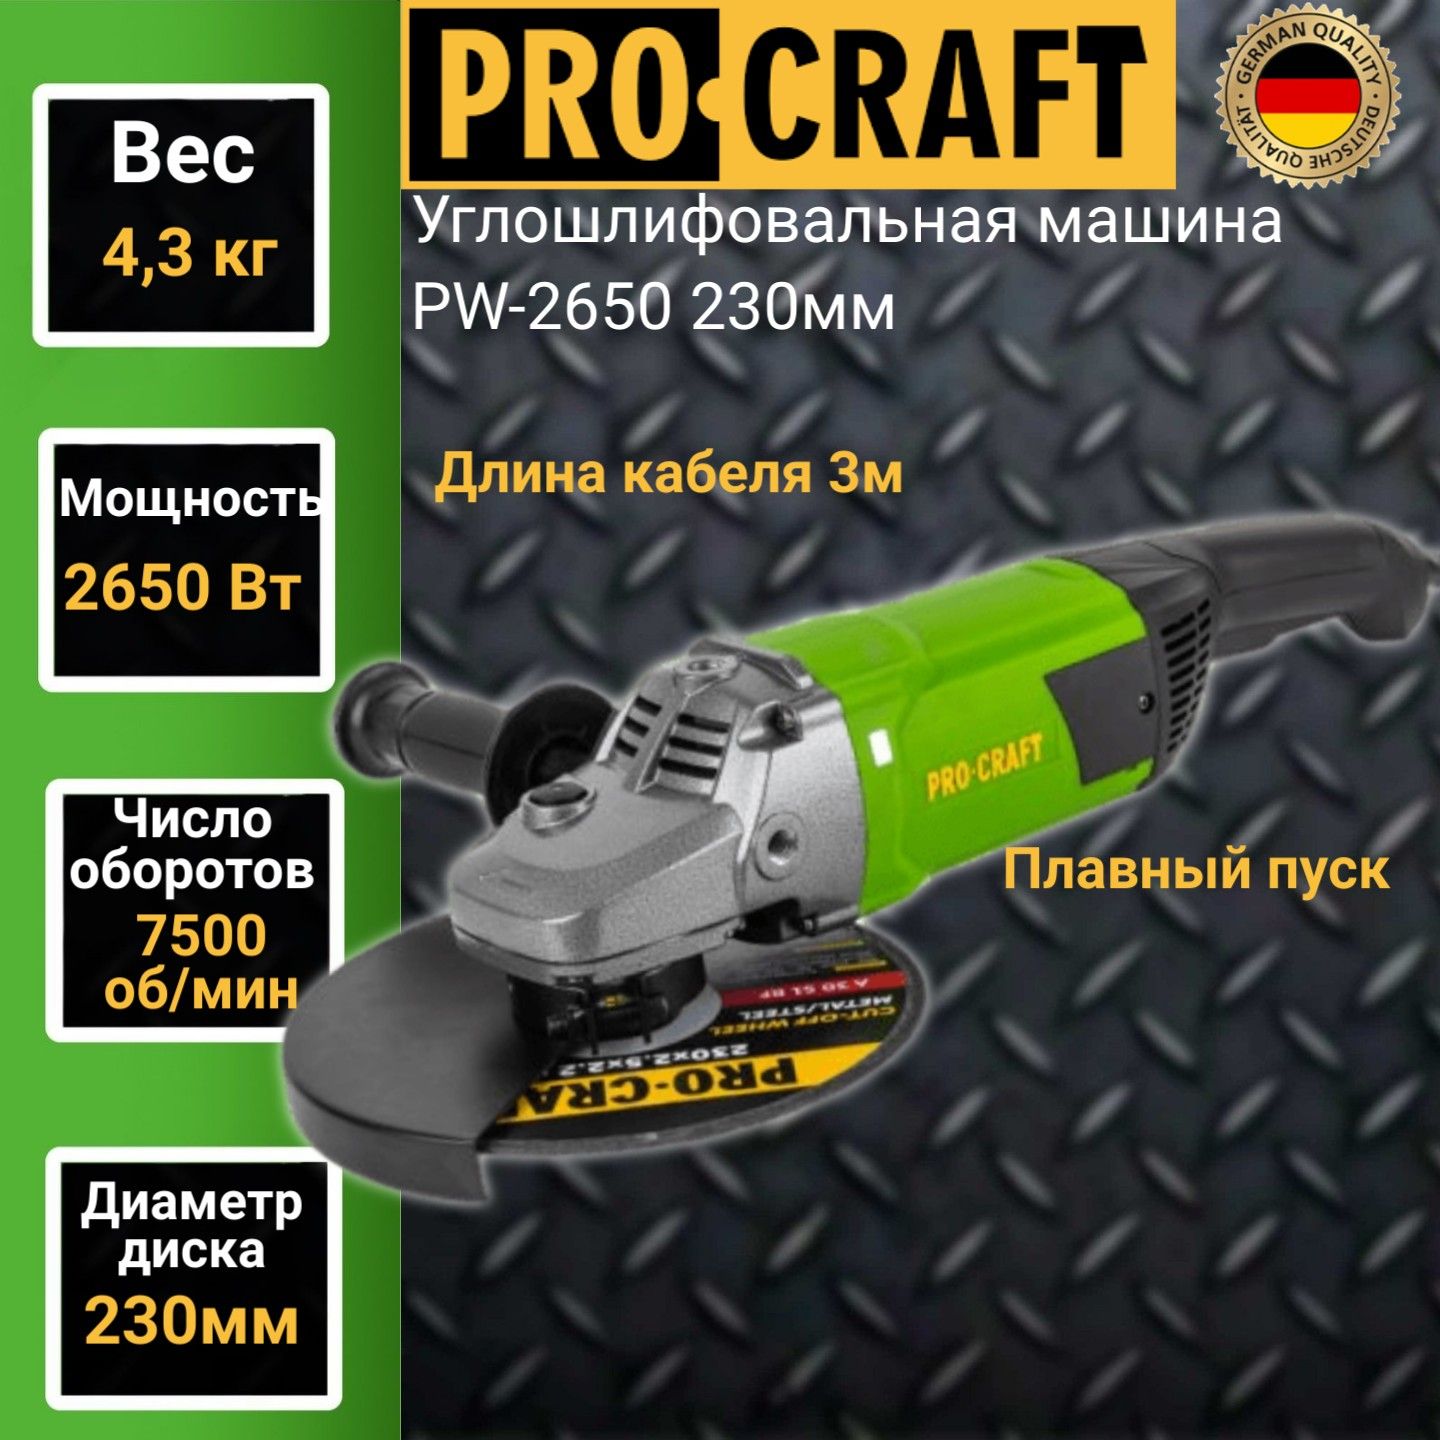 Углошлифовальная машина болгарка Procraft PW 2650, 230мм круг, 2650Вт, 7500об/мин углошлифовальная машина ресанта